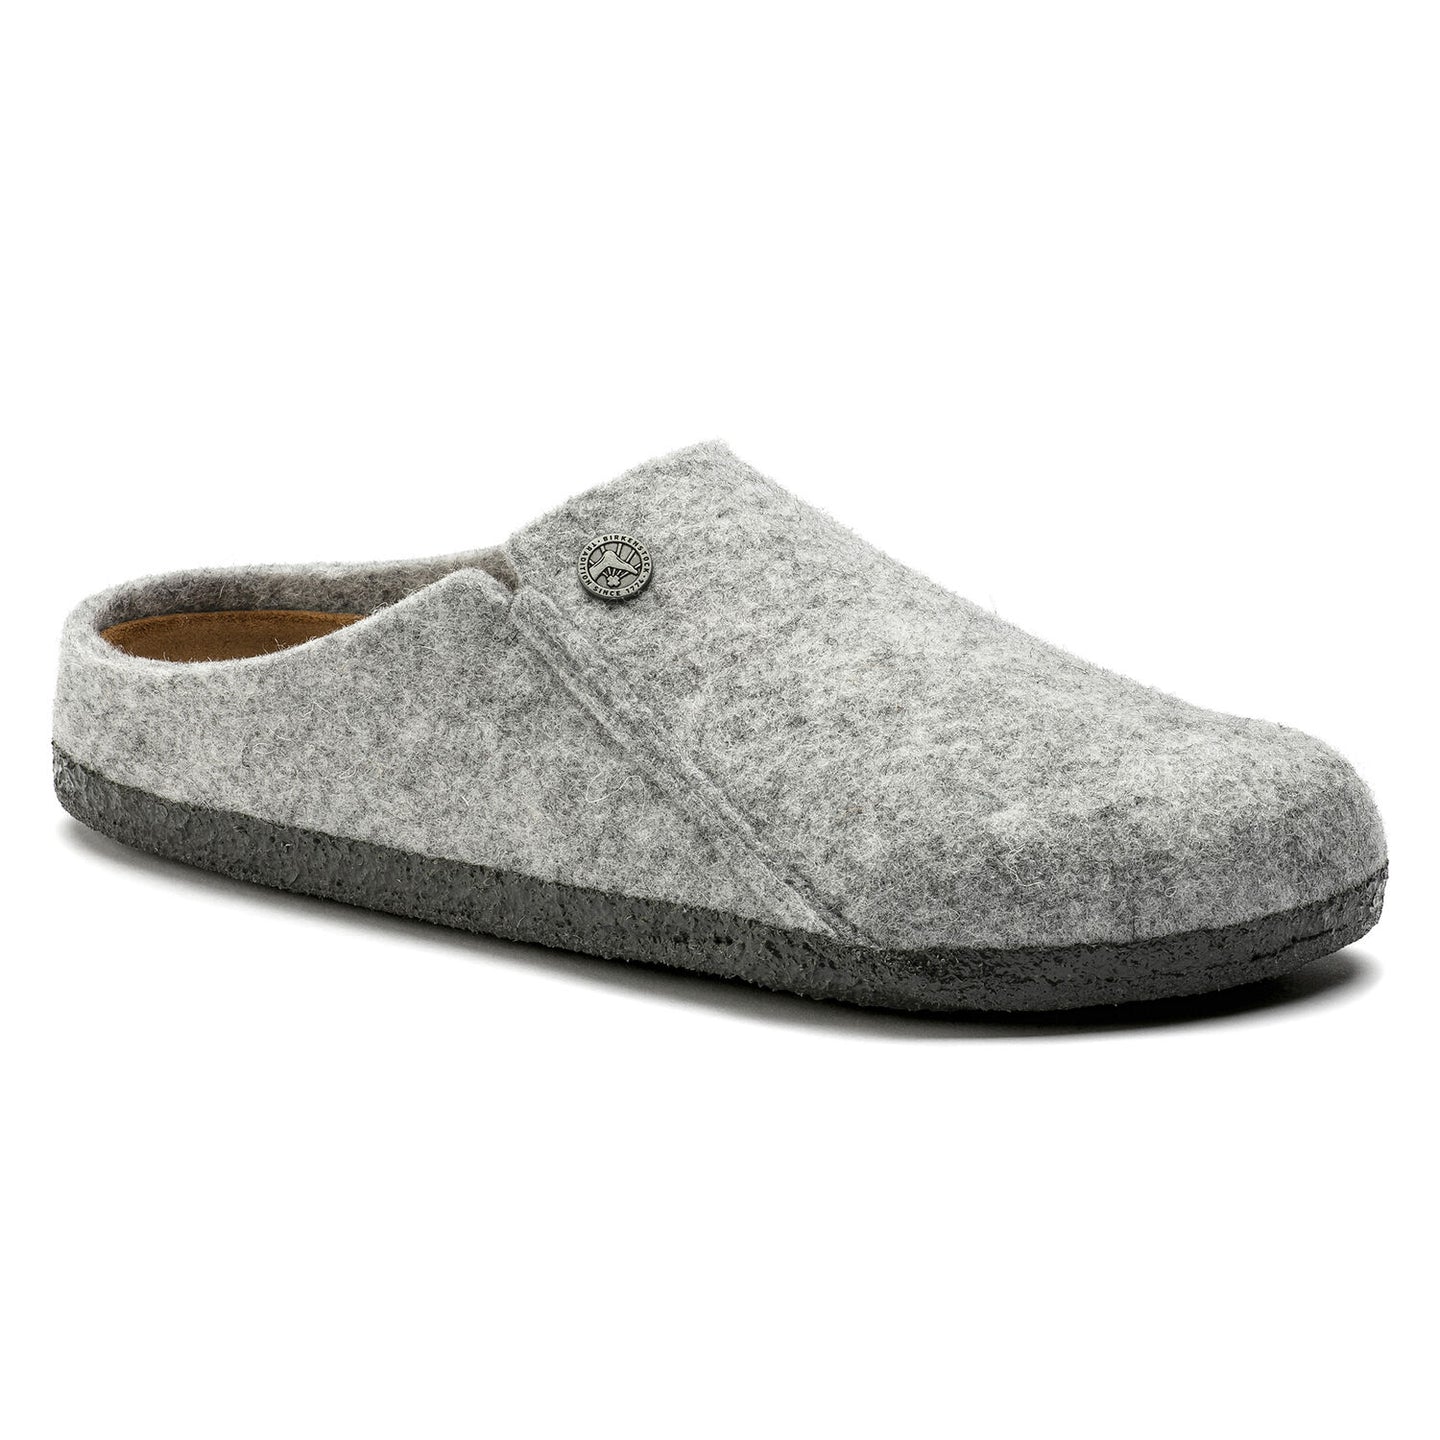 Zermatt Wool Felt in Light Grey - Joe's Boots - Kingston